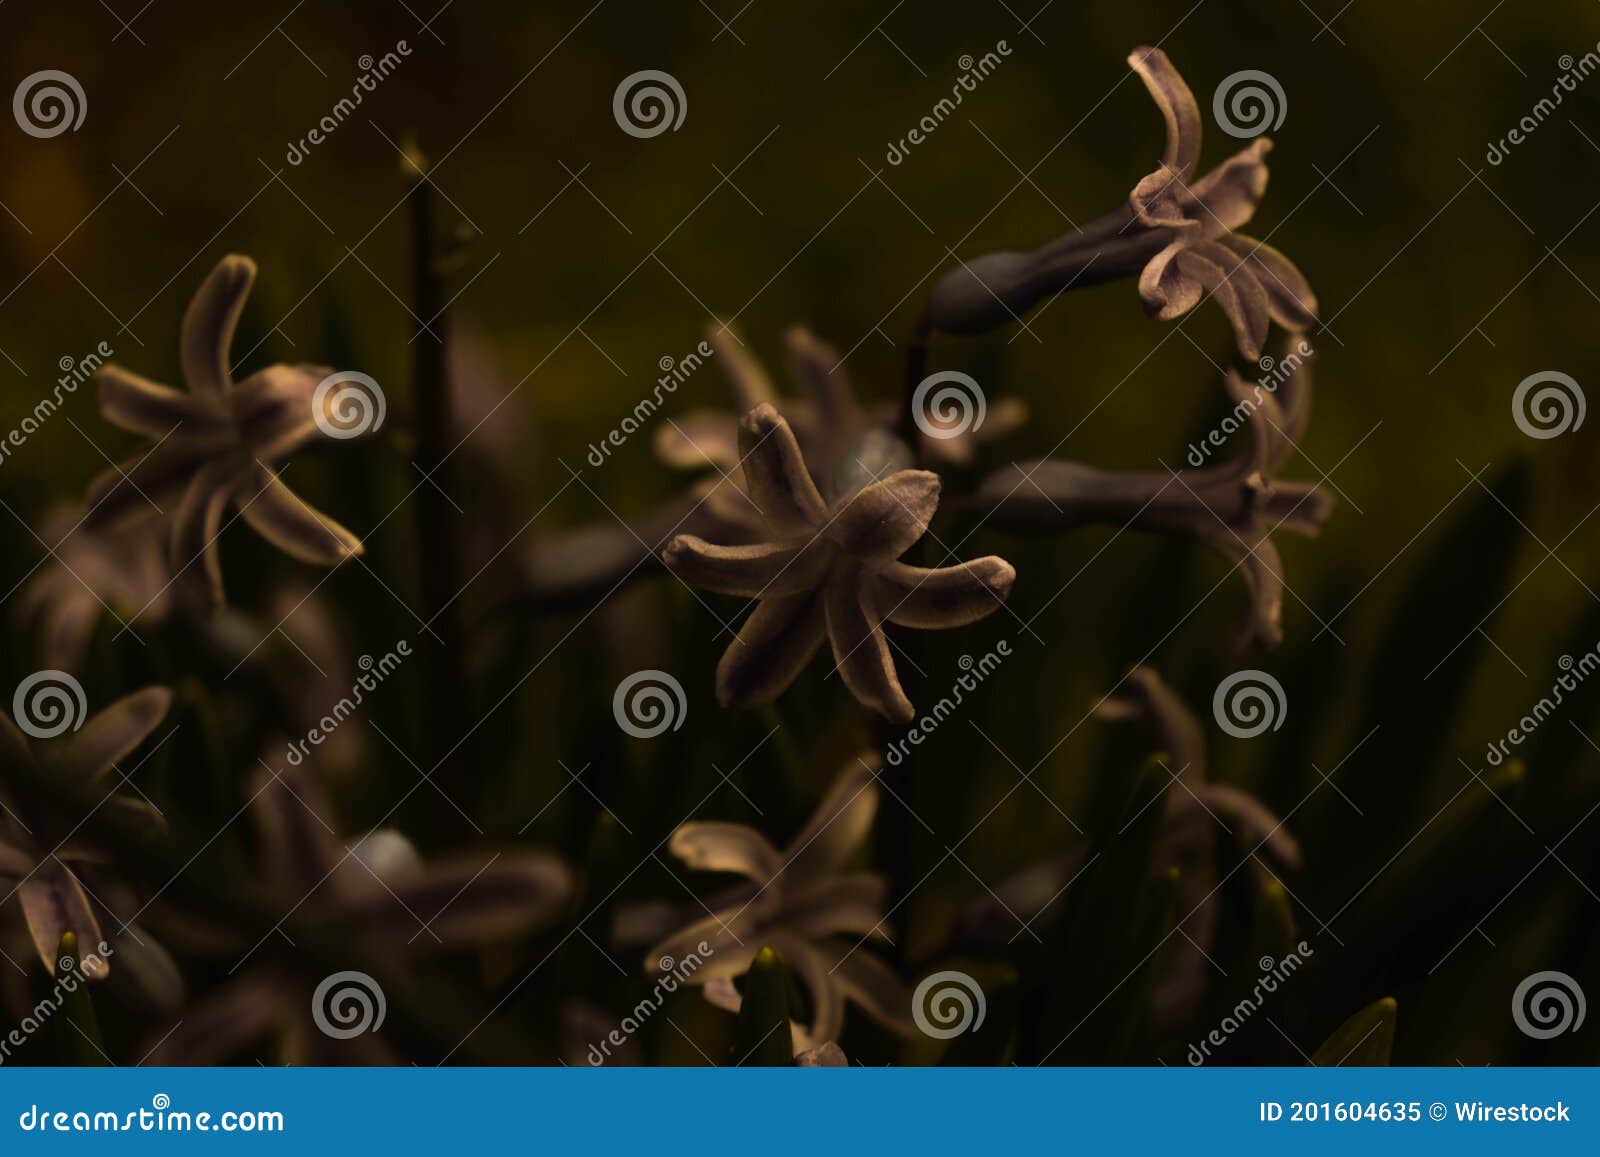 dark preset flower picture